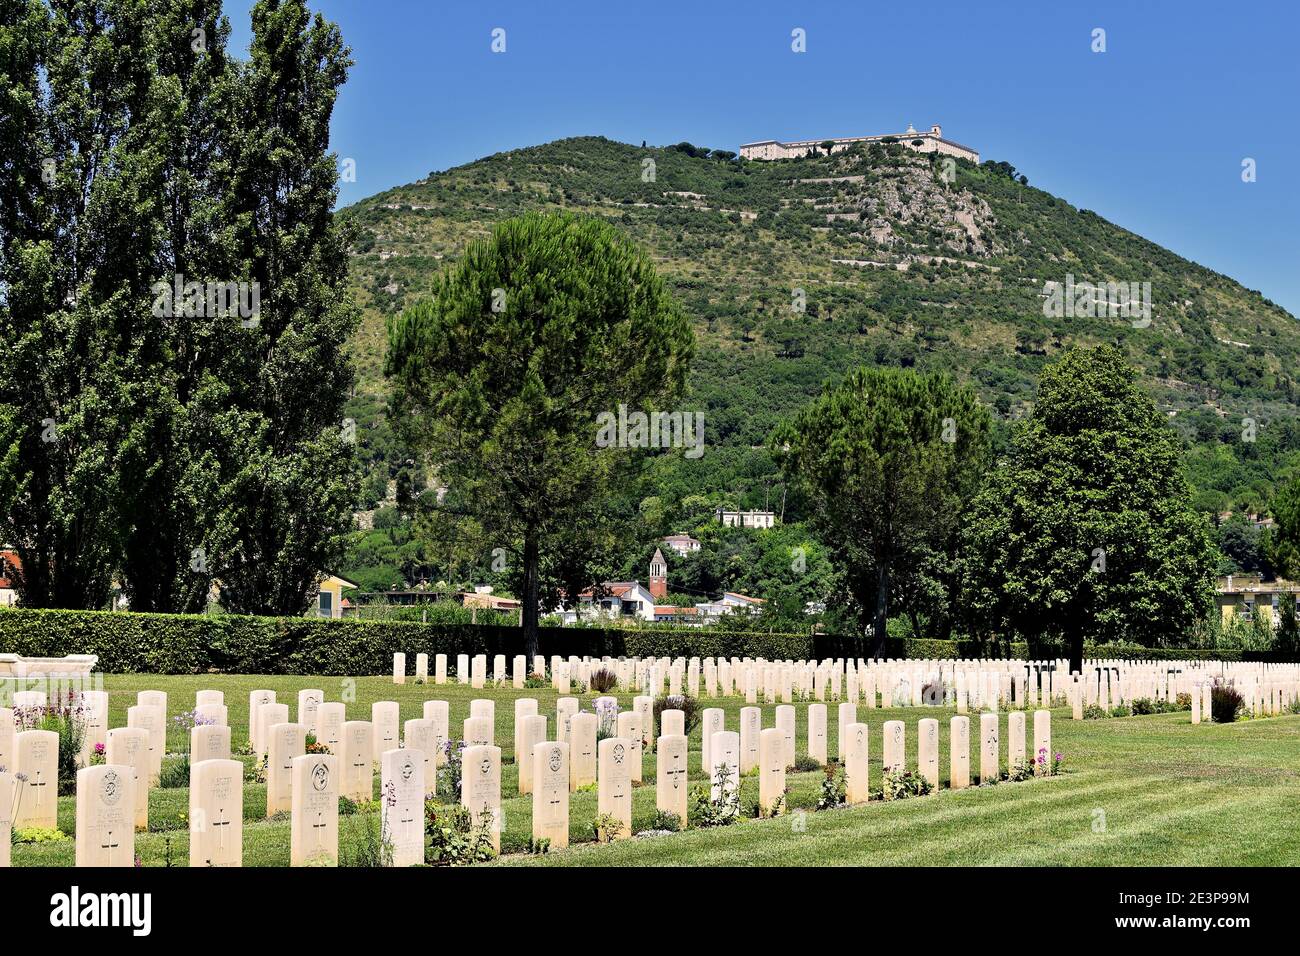 Les tombes de guerre de Cassino avec le monastère de Monte Cassino sur la colline derrière Banque D'Images